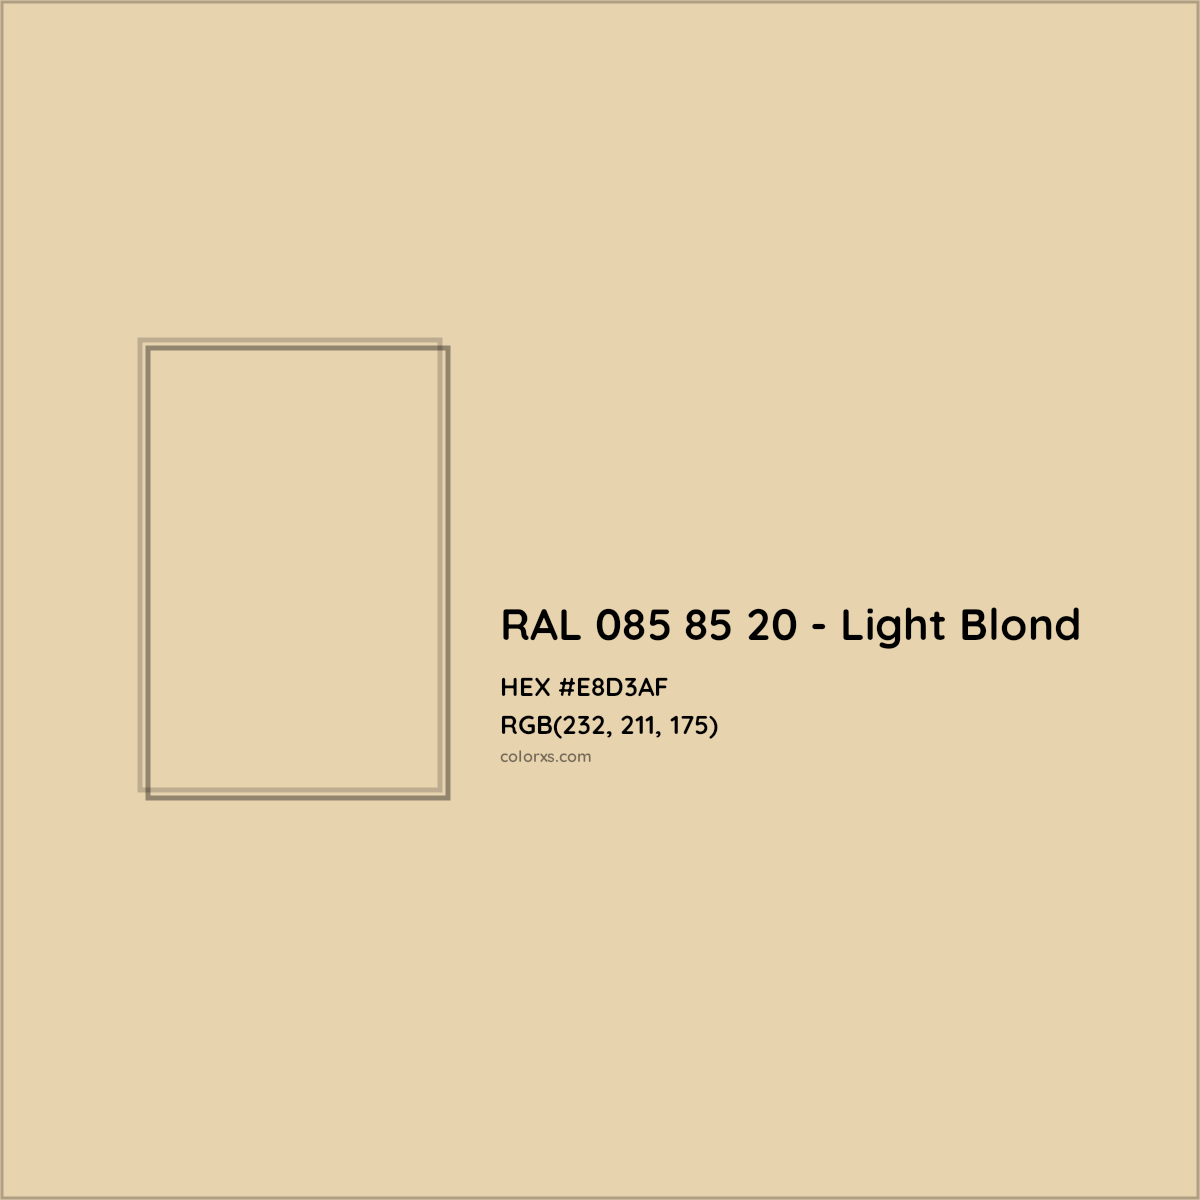 HEX #E8D3AF RAL 085 85 20 - Light Blond CMS RAL Design - Color Code